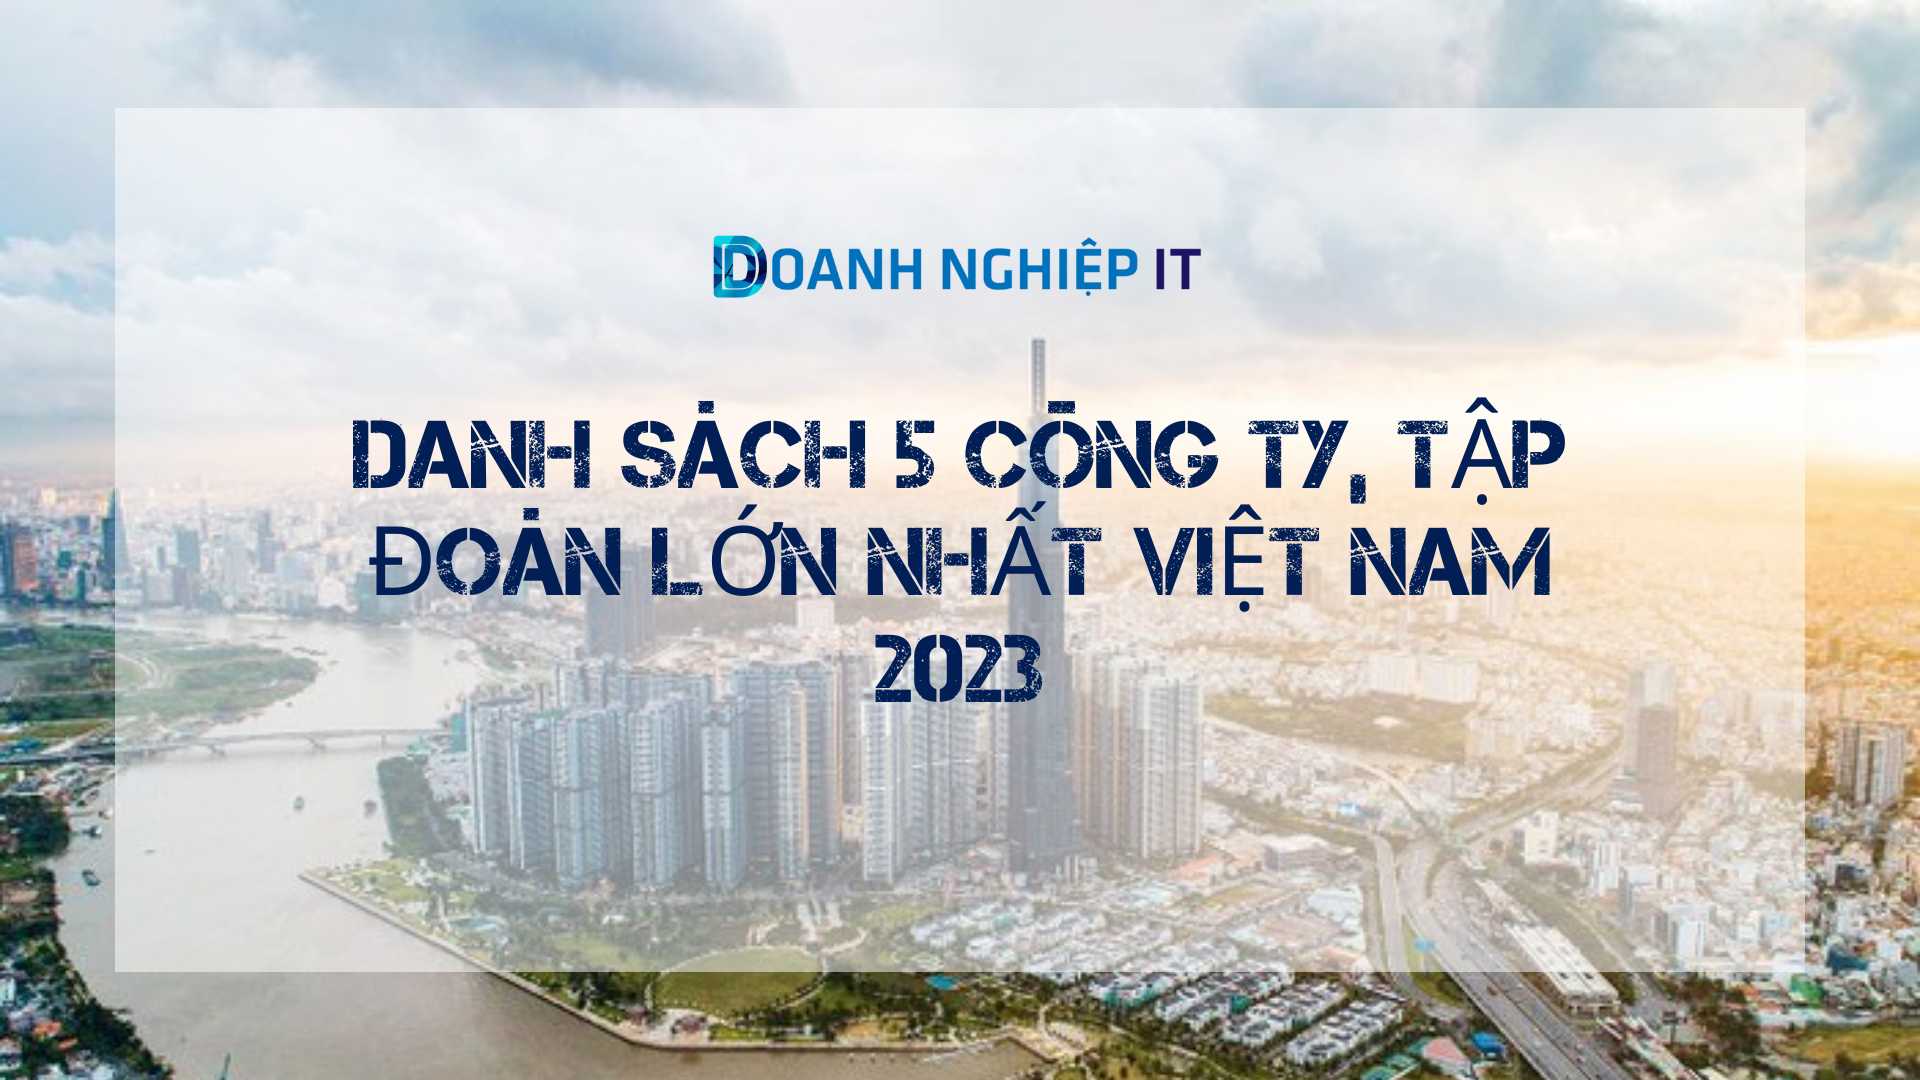 Danh sách 5 công ty, tập đoàn lớn nhất Việt Nam 2023